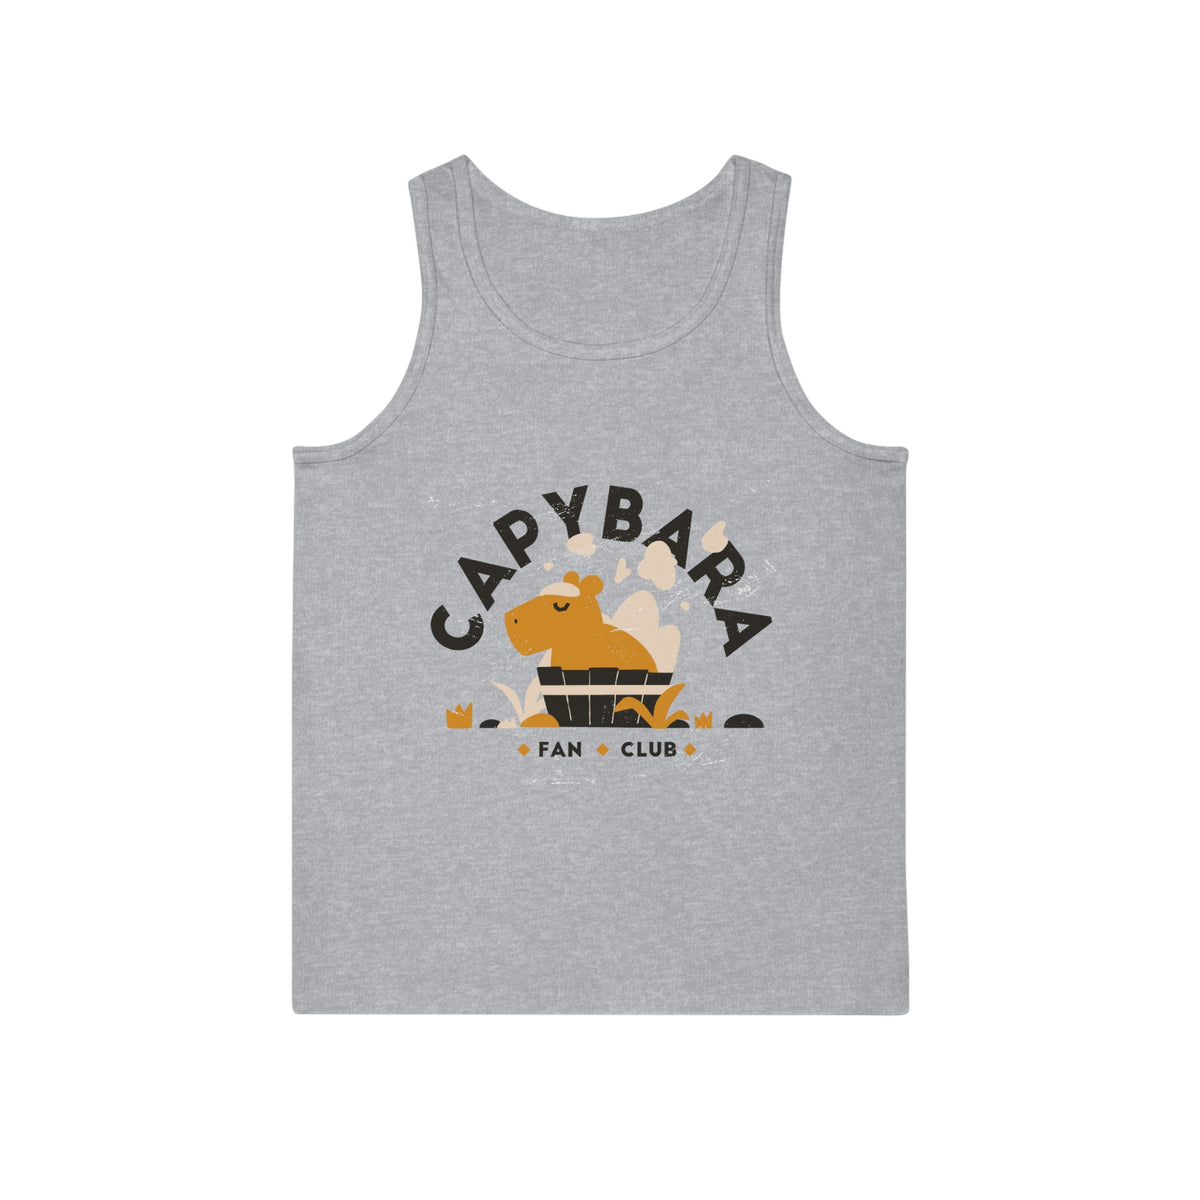 Capybara fan Club